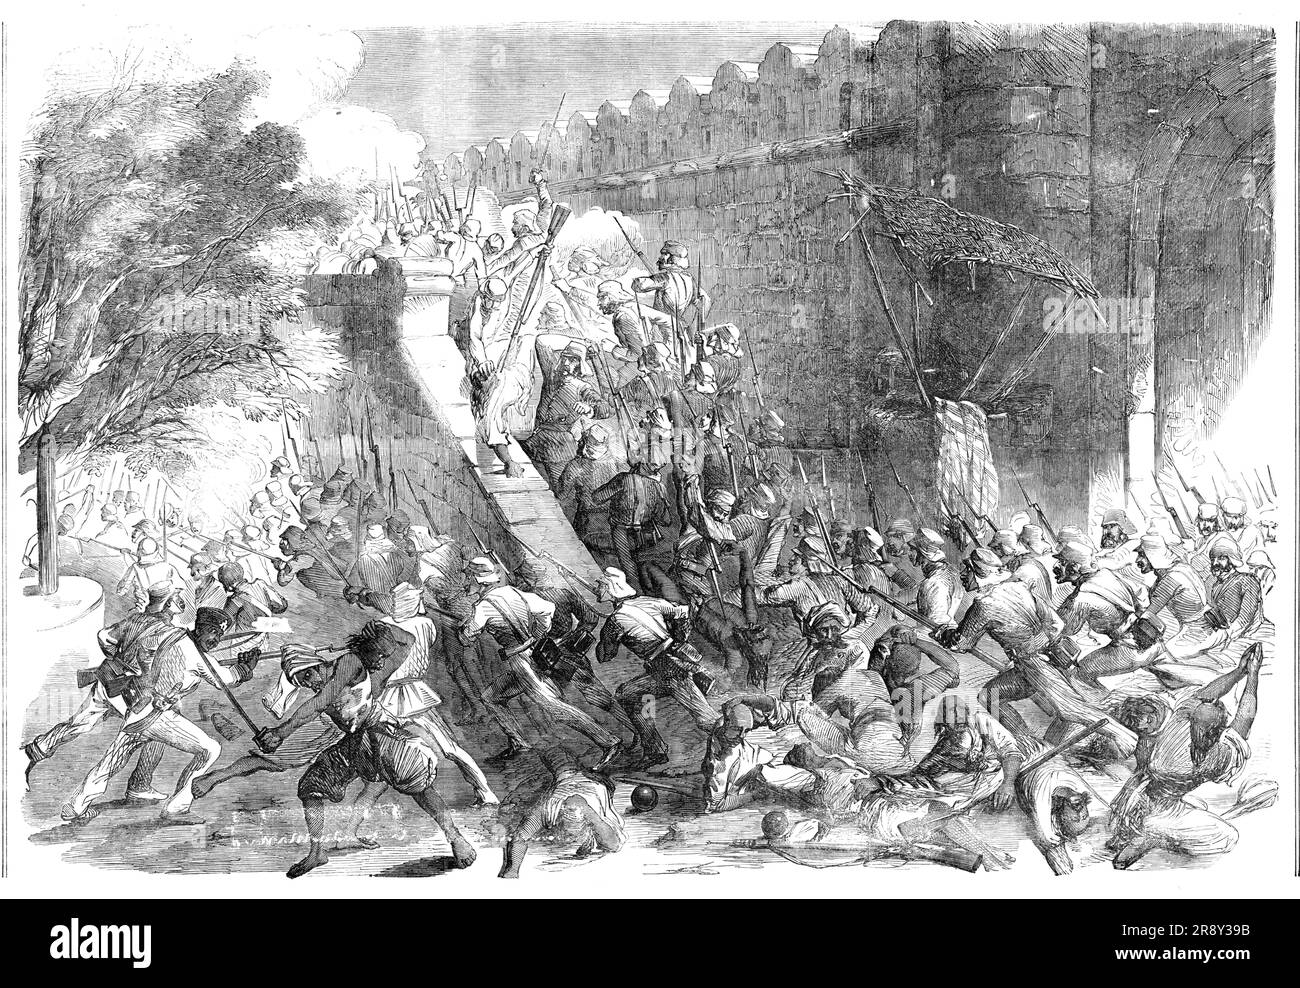 Der Sturm von Delhi, das Kaschmirtor, 1857. Diese lebendige Gravur aus einem Original-Sketch repräsentiert die aufregende Szene des Sturms von Delhi, am Kaschmirtor, durch unsere tapferen Truppen. Der Name des jungen Helden, Salkeld, der Ingenieure, der die Sprengladung, die durch das Tor explodierte, repariert und abgefeuert hat, wird in Verbindung mit dieser kühnen und mutigen Leistung unvergesslich sein.“ Aus "Illustrierte London News", 1857. Stockfoto